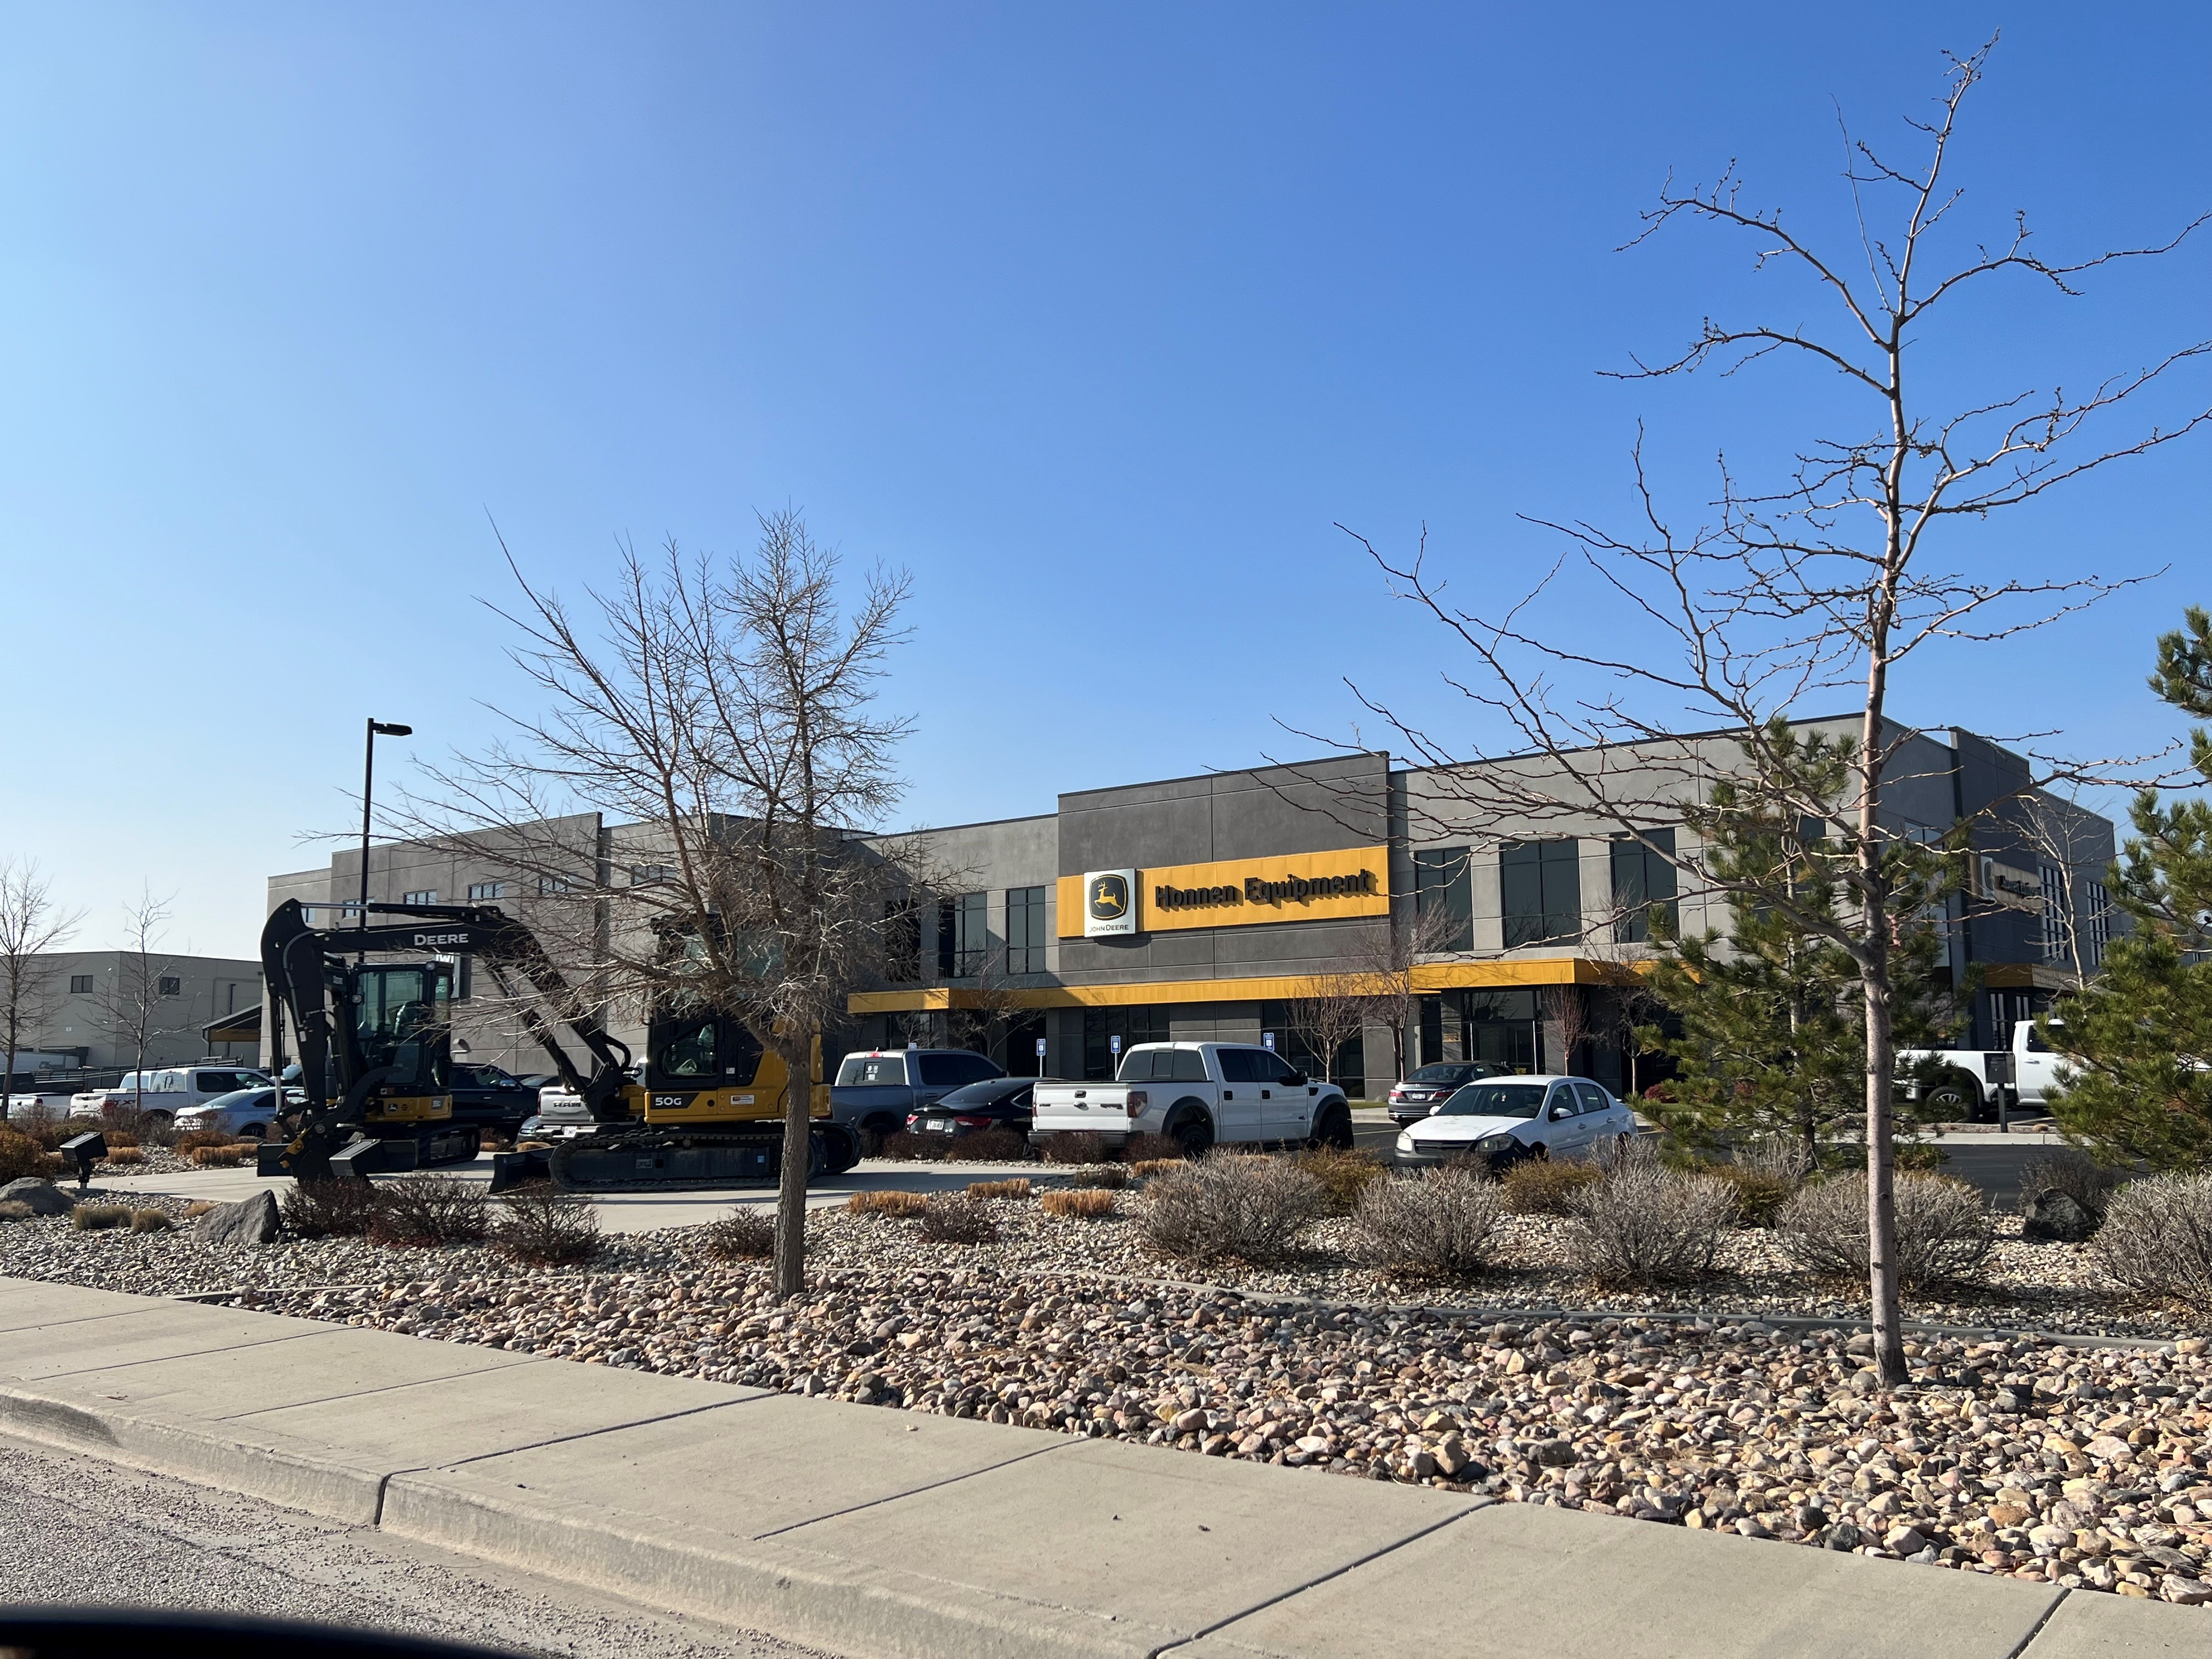 RDO Storefront RDO Equipment Co. - John Deere Salt Lake City (801)262-7441